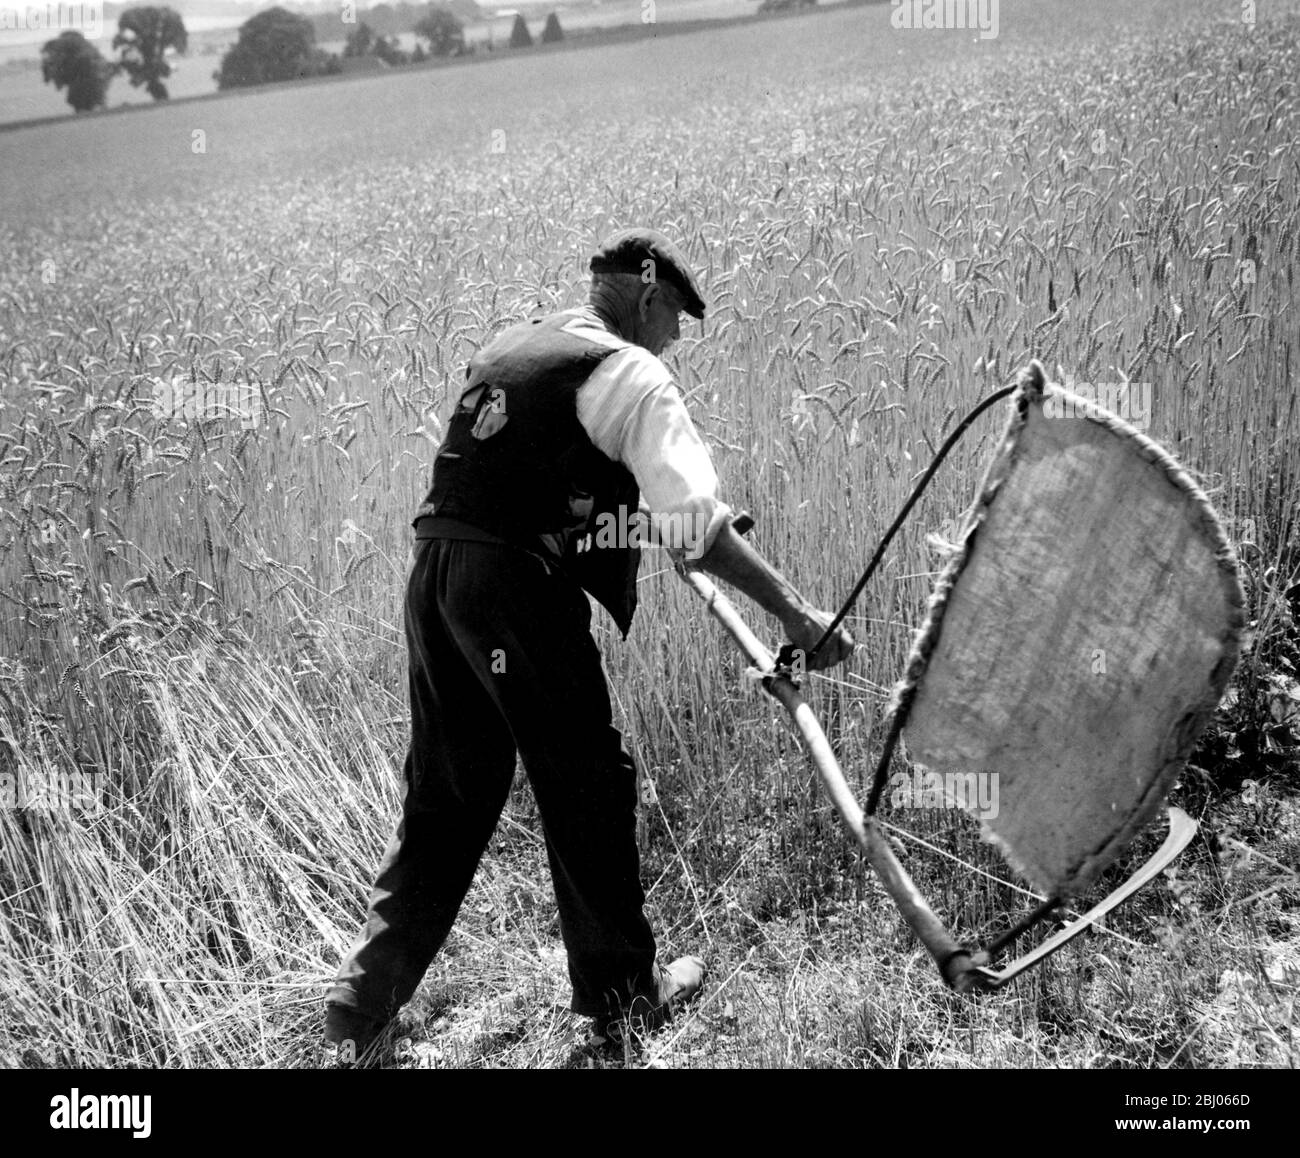 Uomo che taglia il mais con una falce - che raccoglie a mano. Foto mostra Fred Goldup, 72 anni, lavorando in una fattoria vicino Shoreham, Kent, facendo il modo con la sua casa fatta bendare e scythe per il capannone di fare un inizio su questo campo di grano. - 5 agosto 1947 Foto Stock